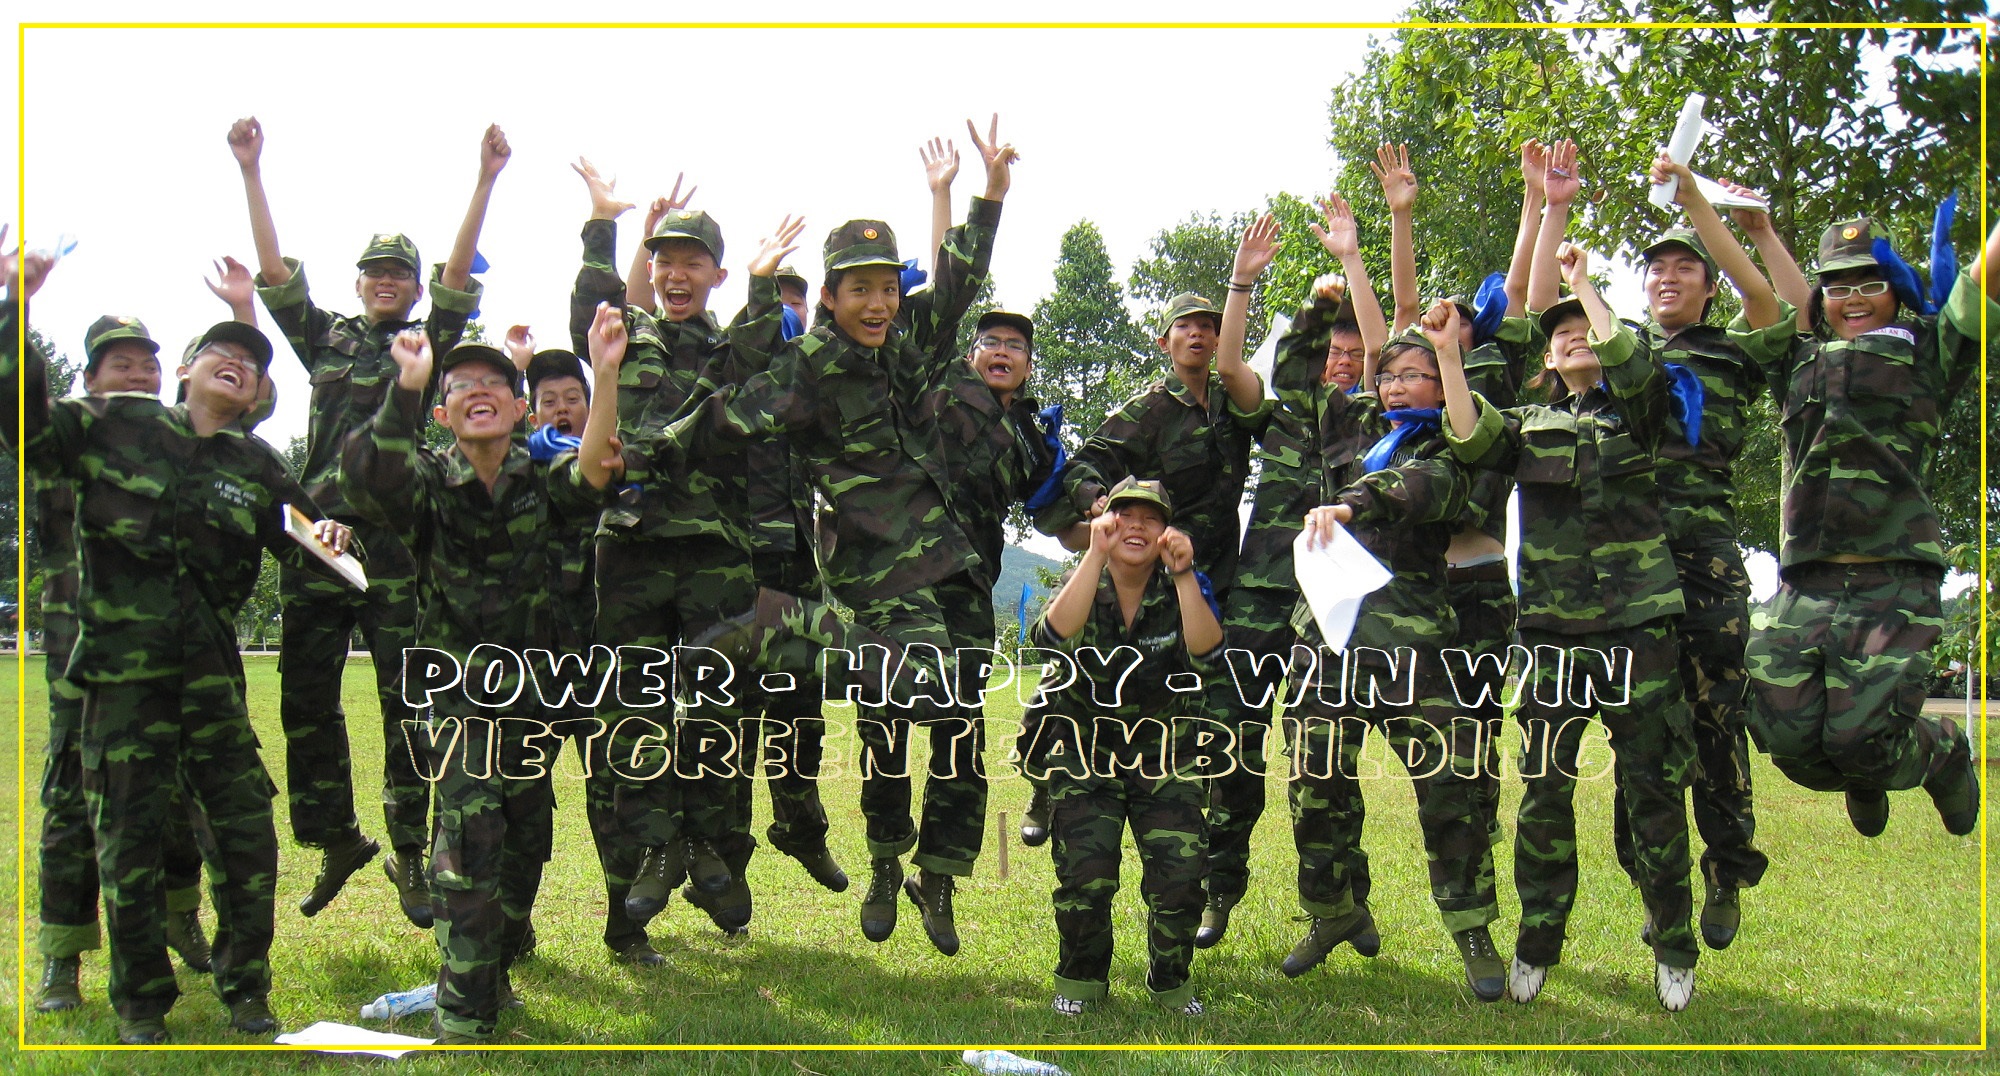 Du Lịch Xanh & Viet Green Team Building chuyên tổ chức các chương trình Teambulding nhập ngũ quân đội chuyên nghiệp, tổ chức  team building chiến binh thép, team building chiến trường khốc liệt, rèn luyện ý chí kiên cường.